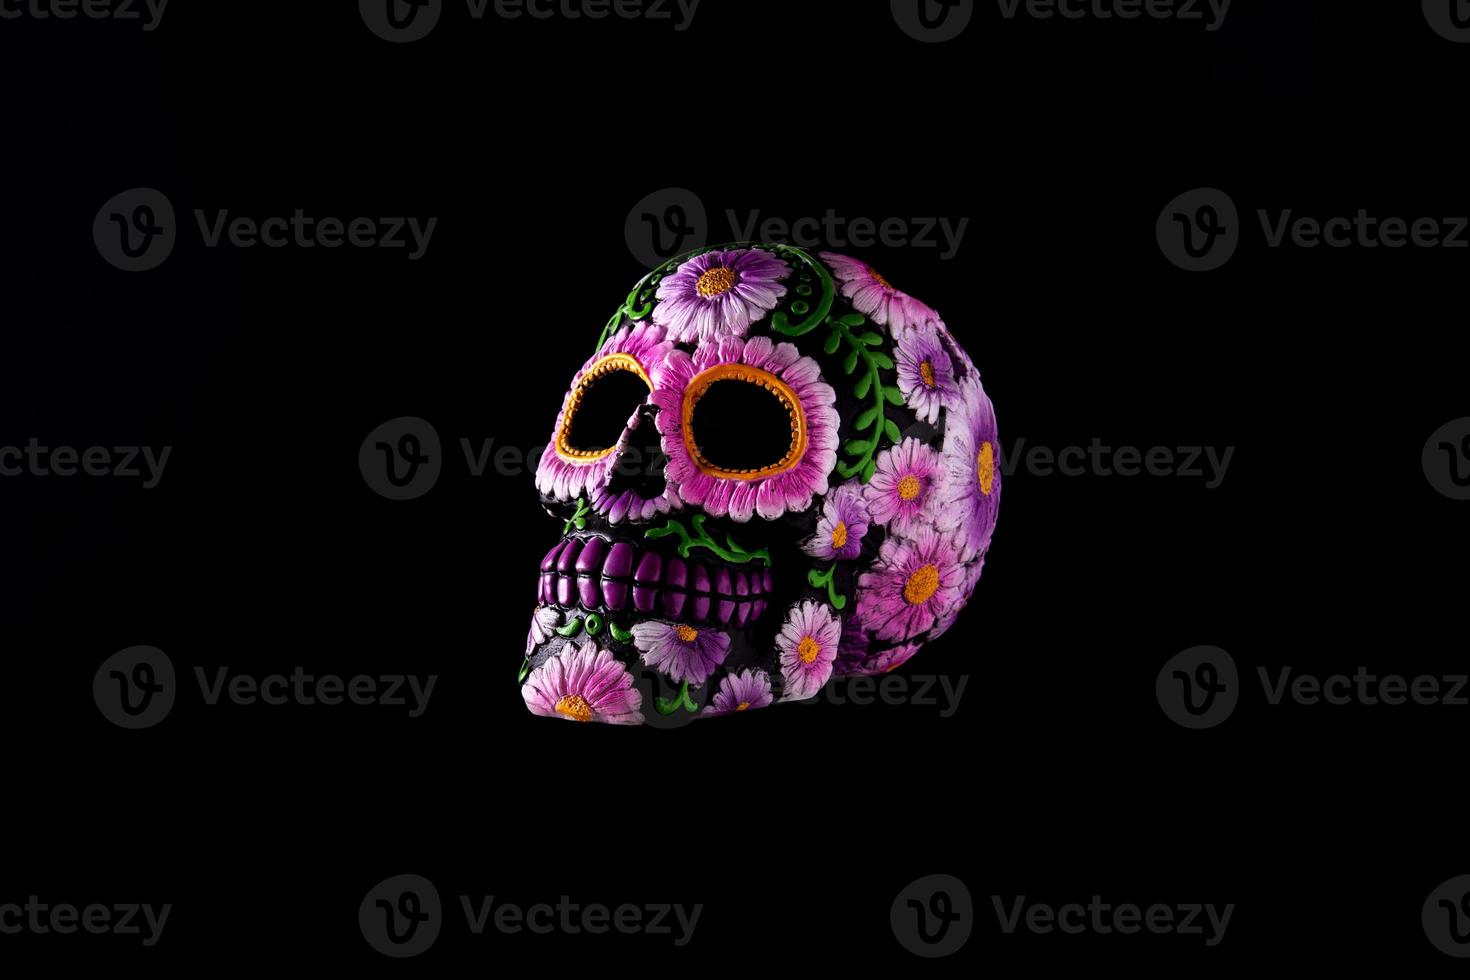 crâne mexicain typique flottant dans l'air et diadème de fleurs photo